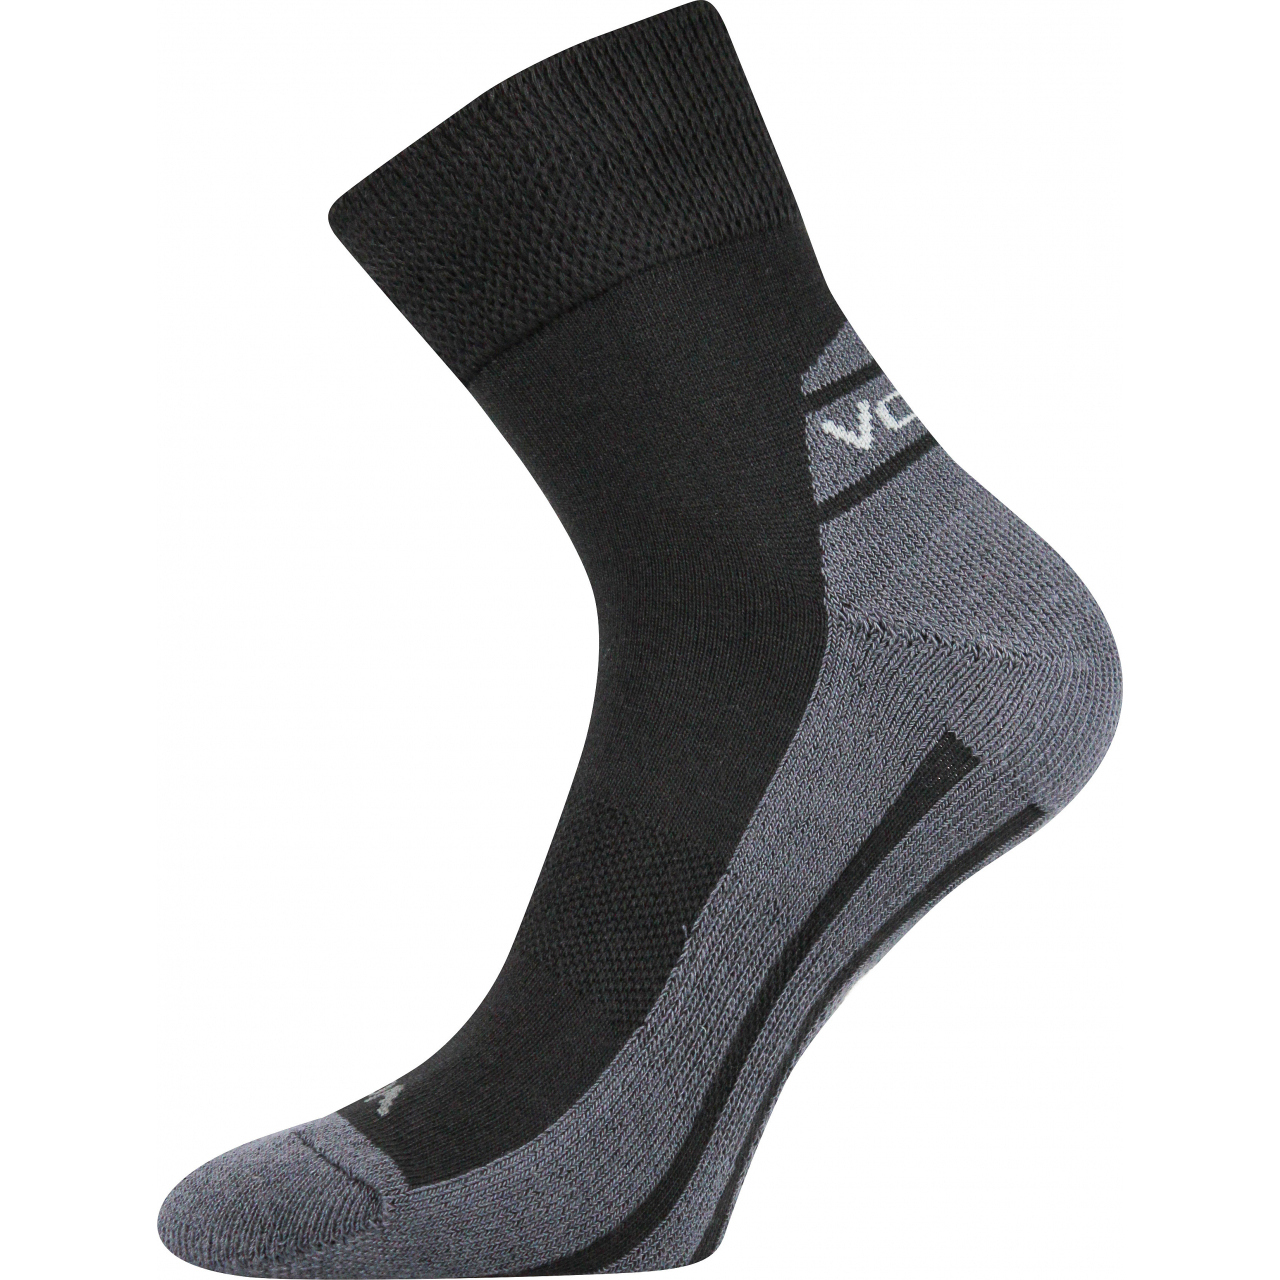 Ponožky sportovní Voxx Oliver - černé-šedé, 43-46